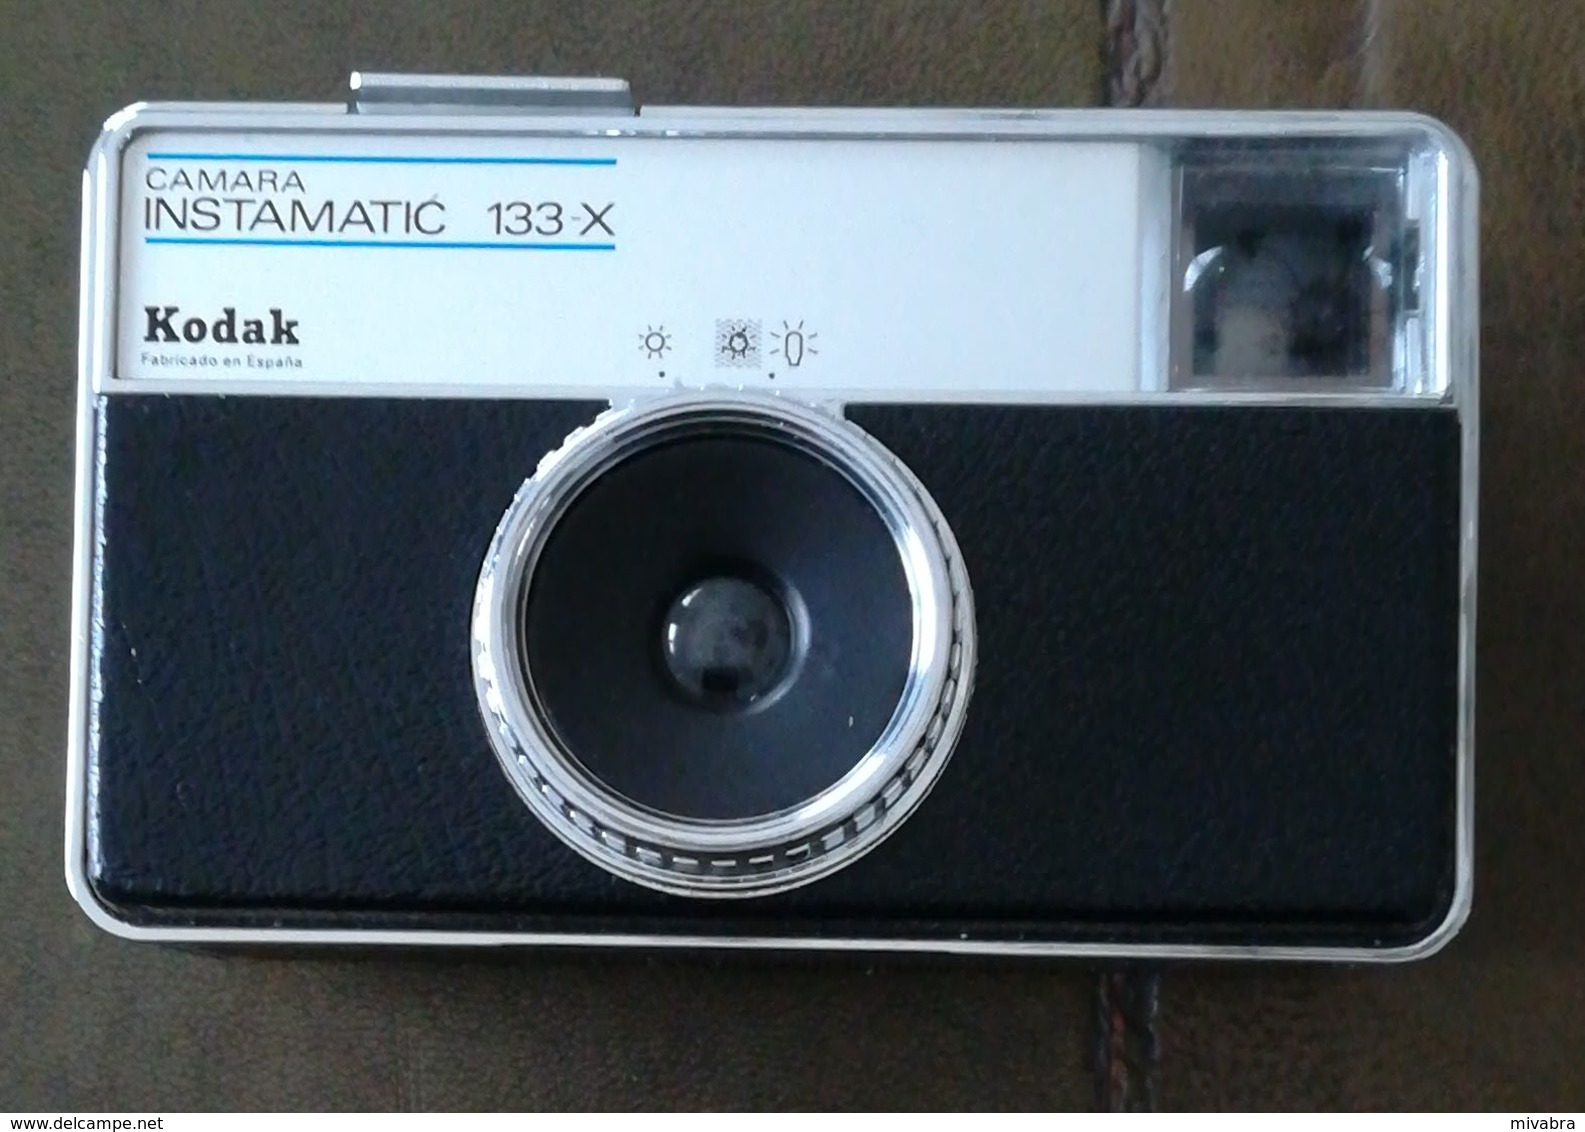 KODAK - CAMARA INSTAMATIC 133-X  - 1968